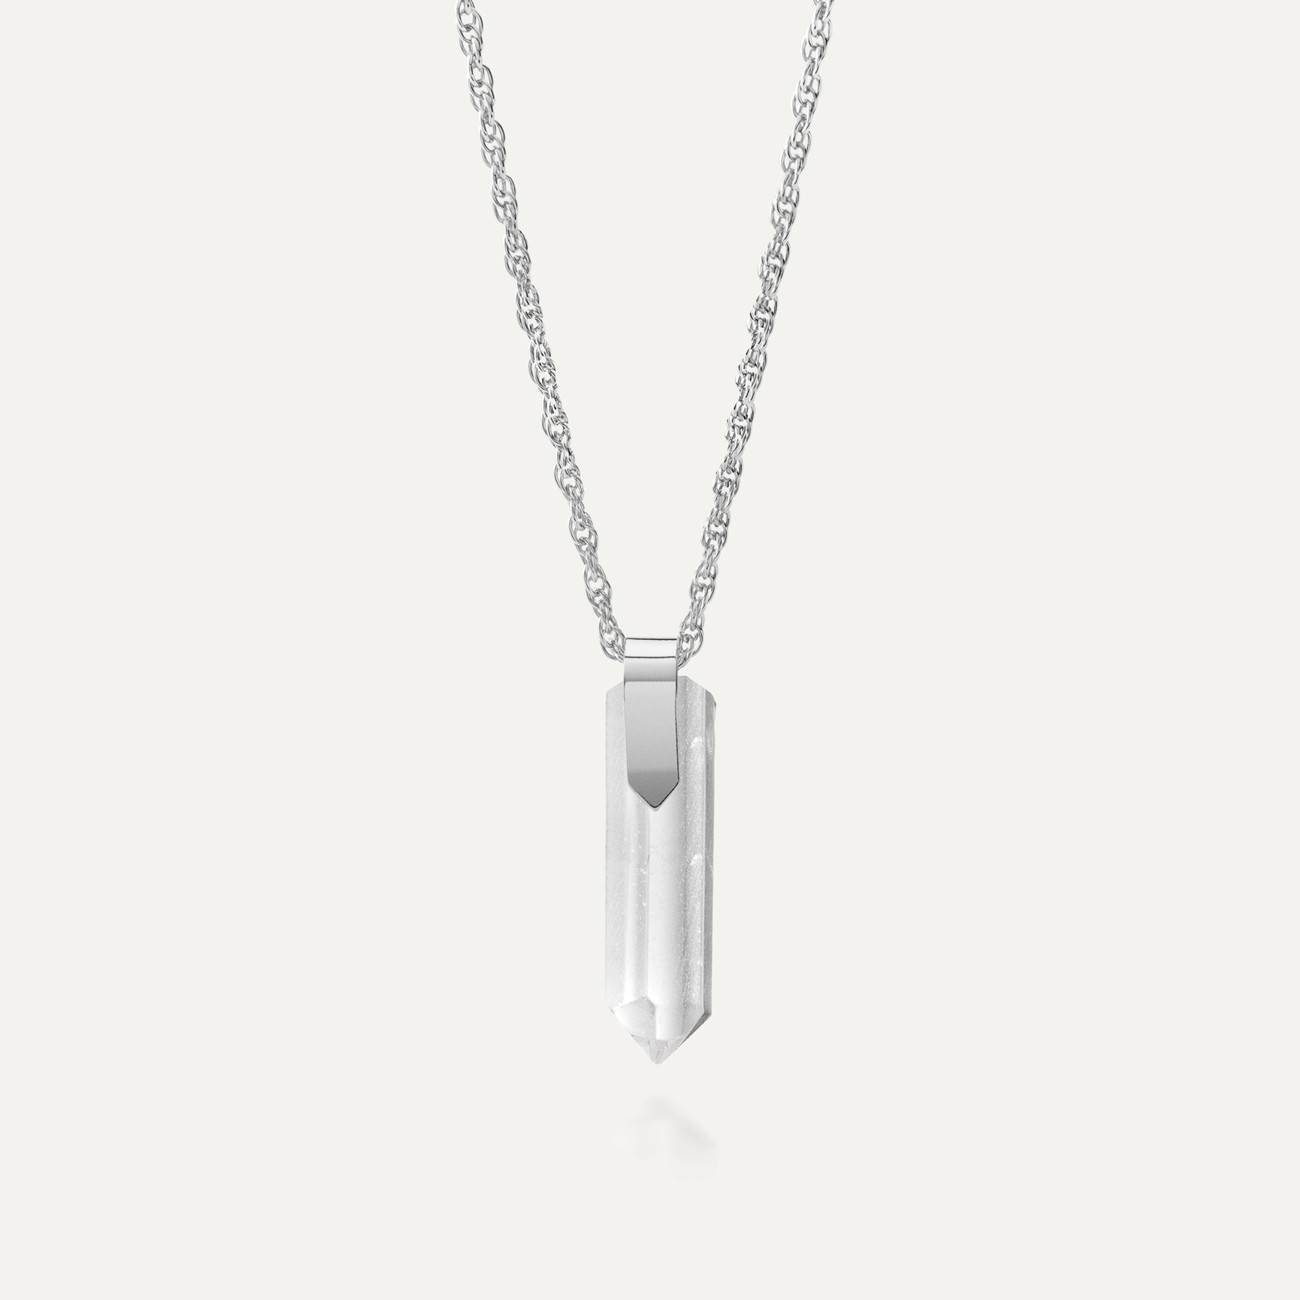 Silver necklace, GAVBARI icicle pendant, 925 silver